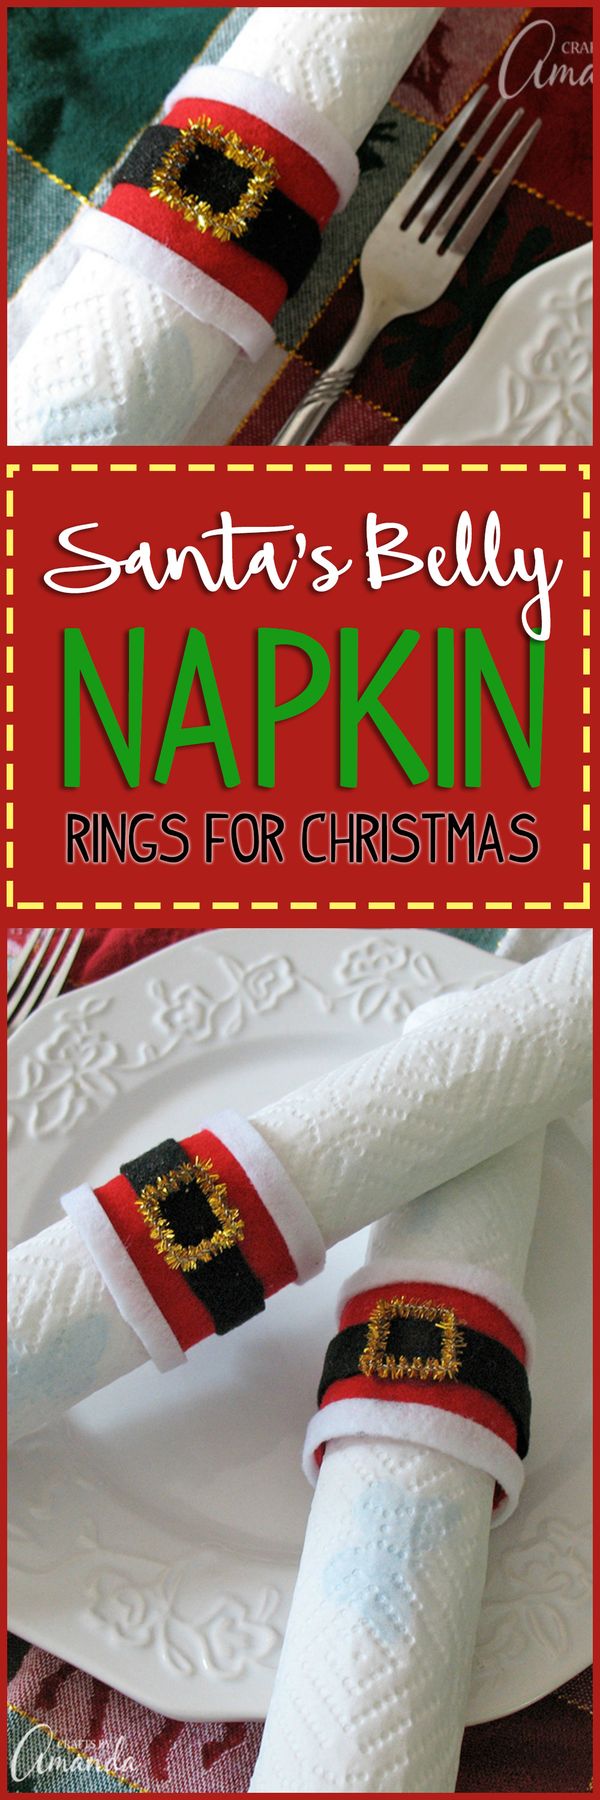 Santa's Belly Napkin Rings